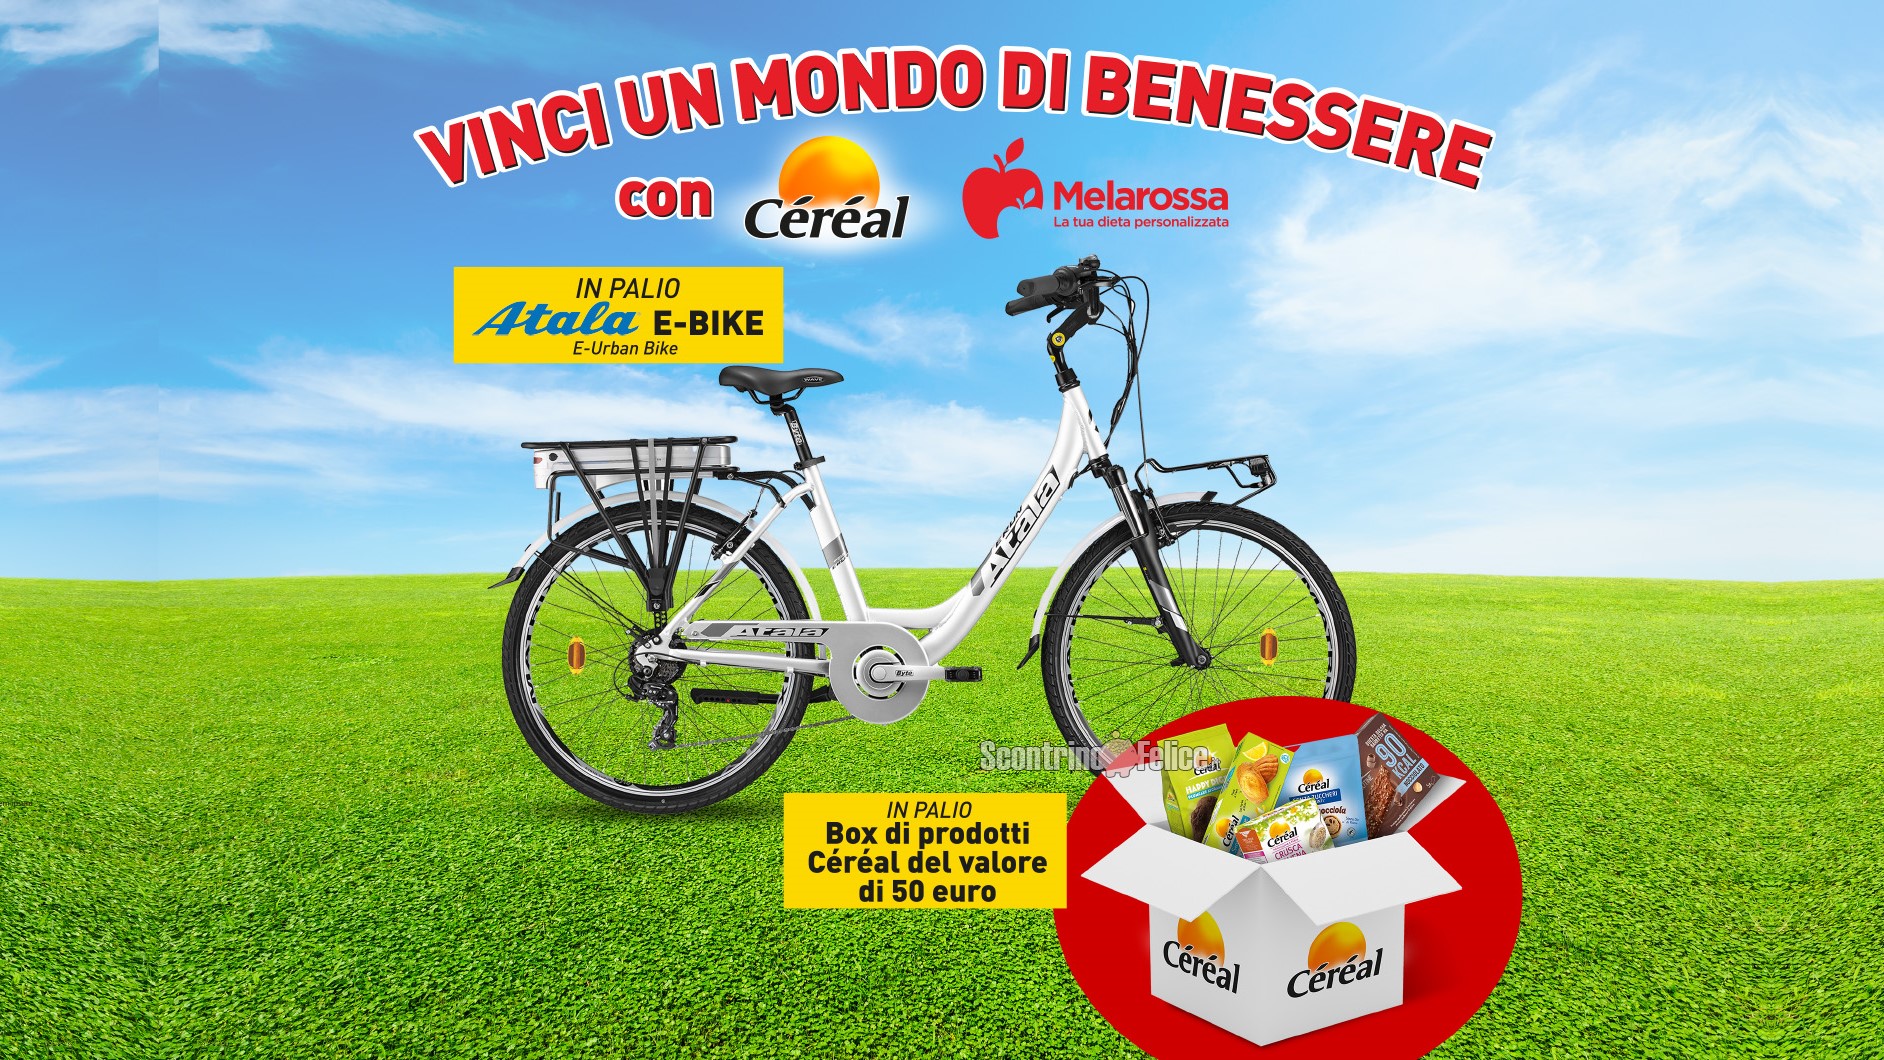 Concorso gratuito Céréal e Melarossa: vinci 1 bici Atala E-Urban Bike e 10 box di prodotti